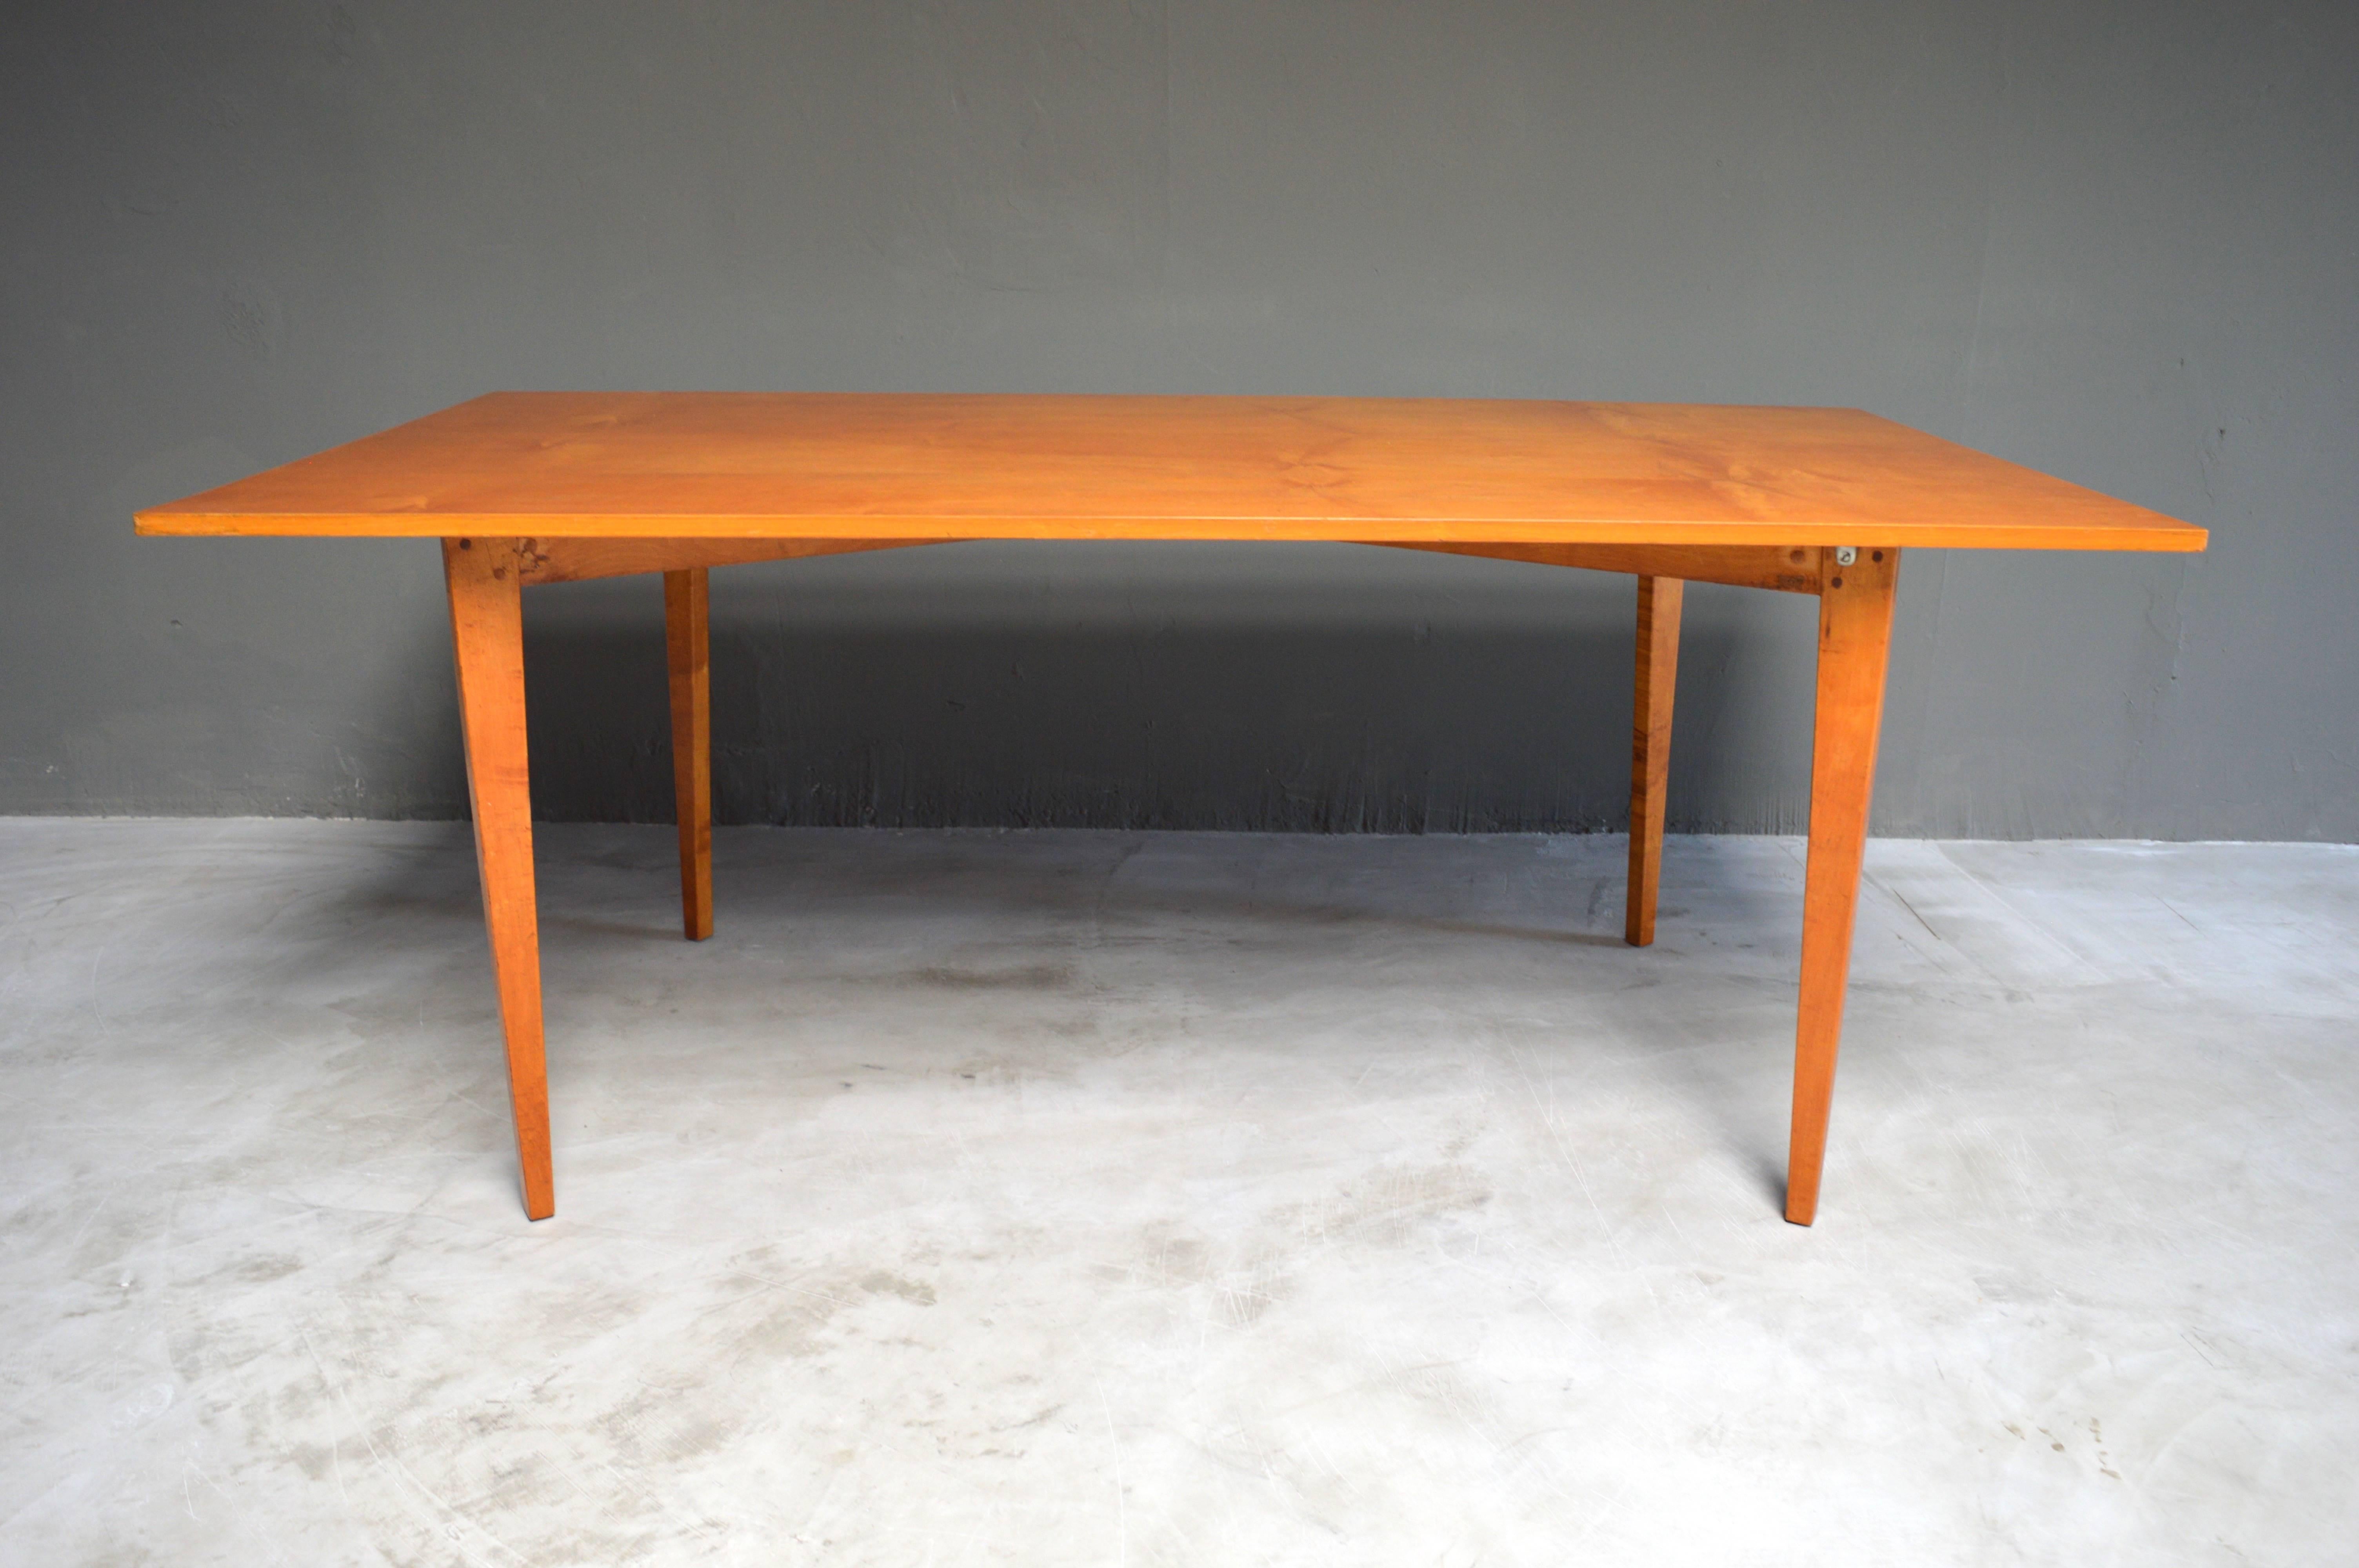 Excellente table en bois de Paul McCobb. Bon état et couleurs d'époque. Excellentes lignes et conception. Peut être utilisée comme table à manger ou table de conférence. 